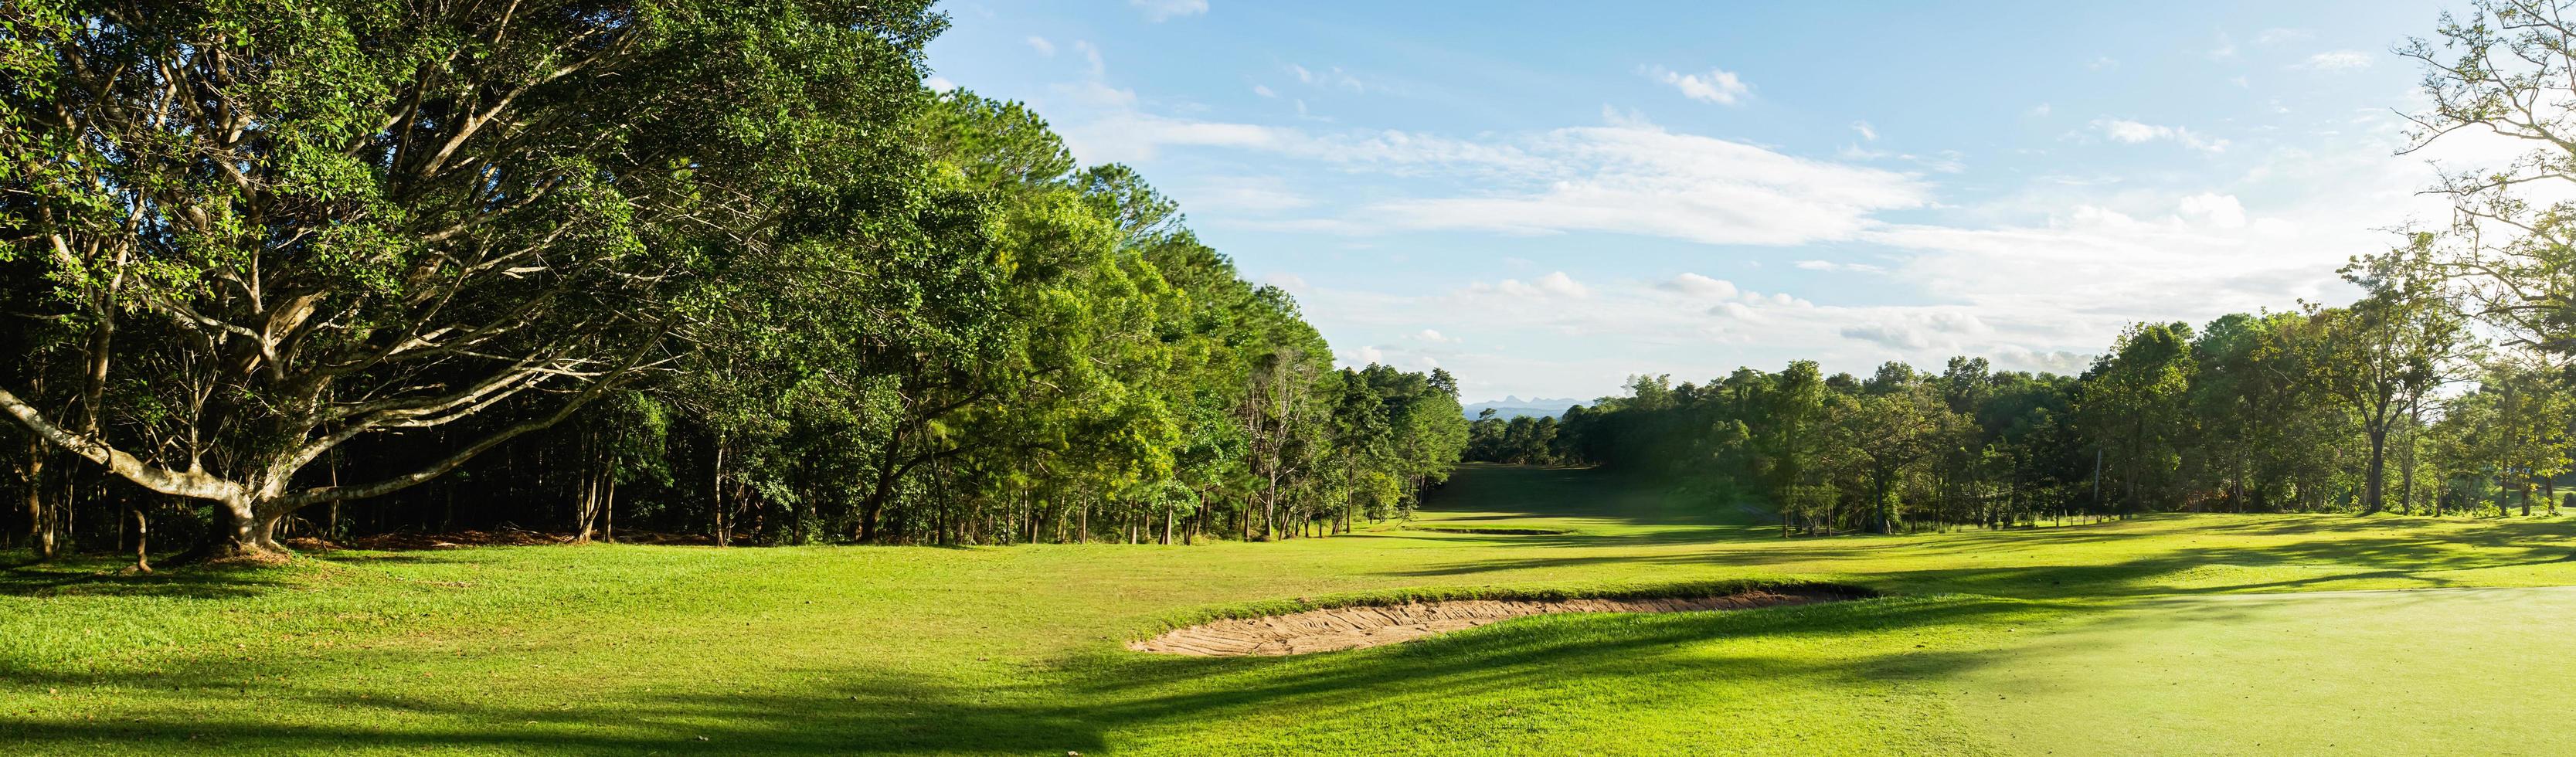 panorama paysage golf crouse avec la lumière du soleil photo